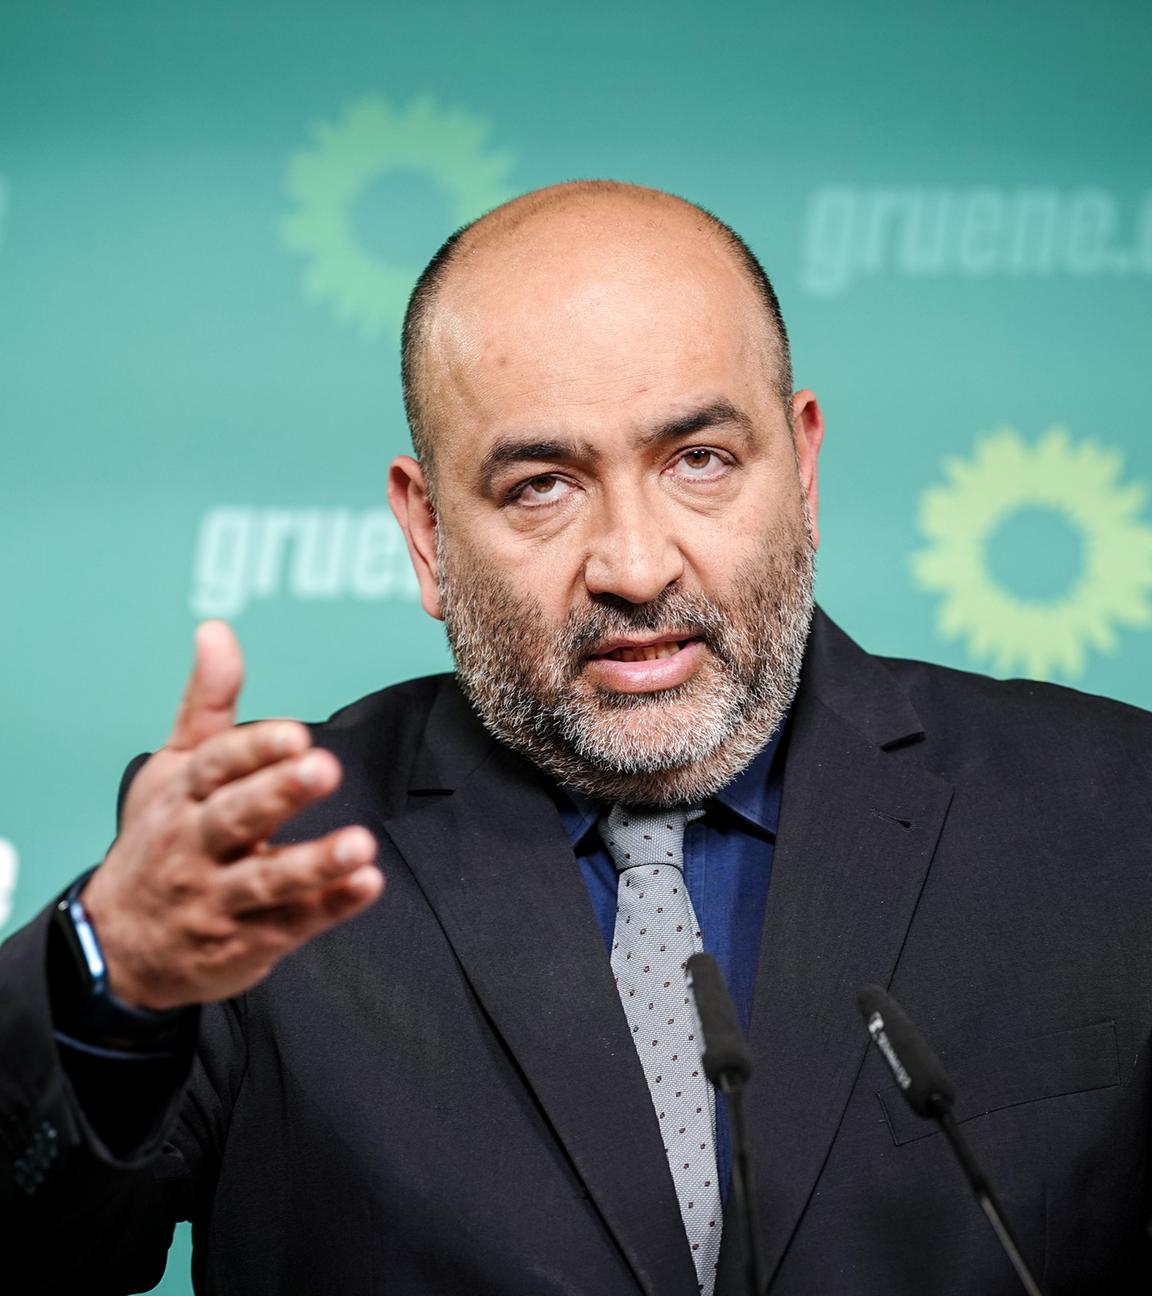 Berlin: Omid Nouripour, Bundesvorsitzender von Bündnis 90/Die Grünen, gibt nach einer Parteiratssitzung der Partei eine Pressekonferenz zur Bremer Bürgerschaftswahl.